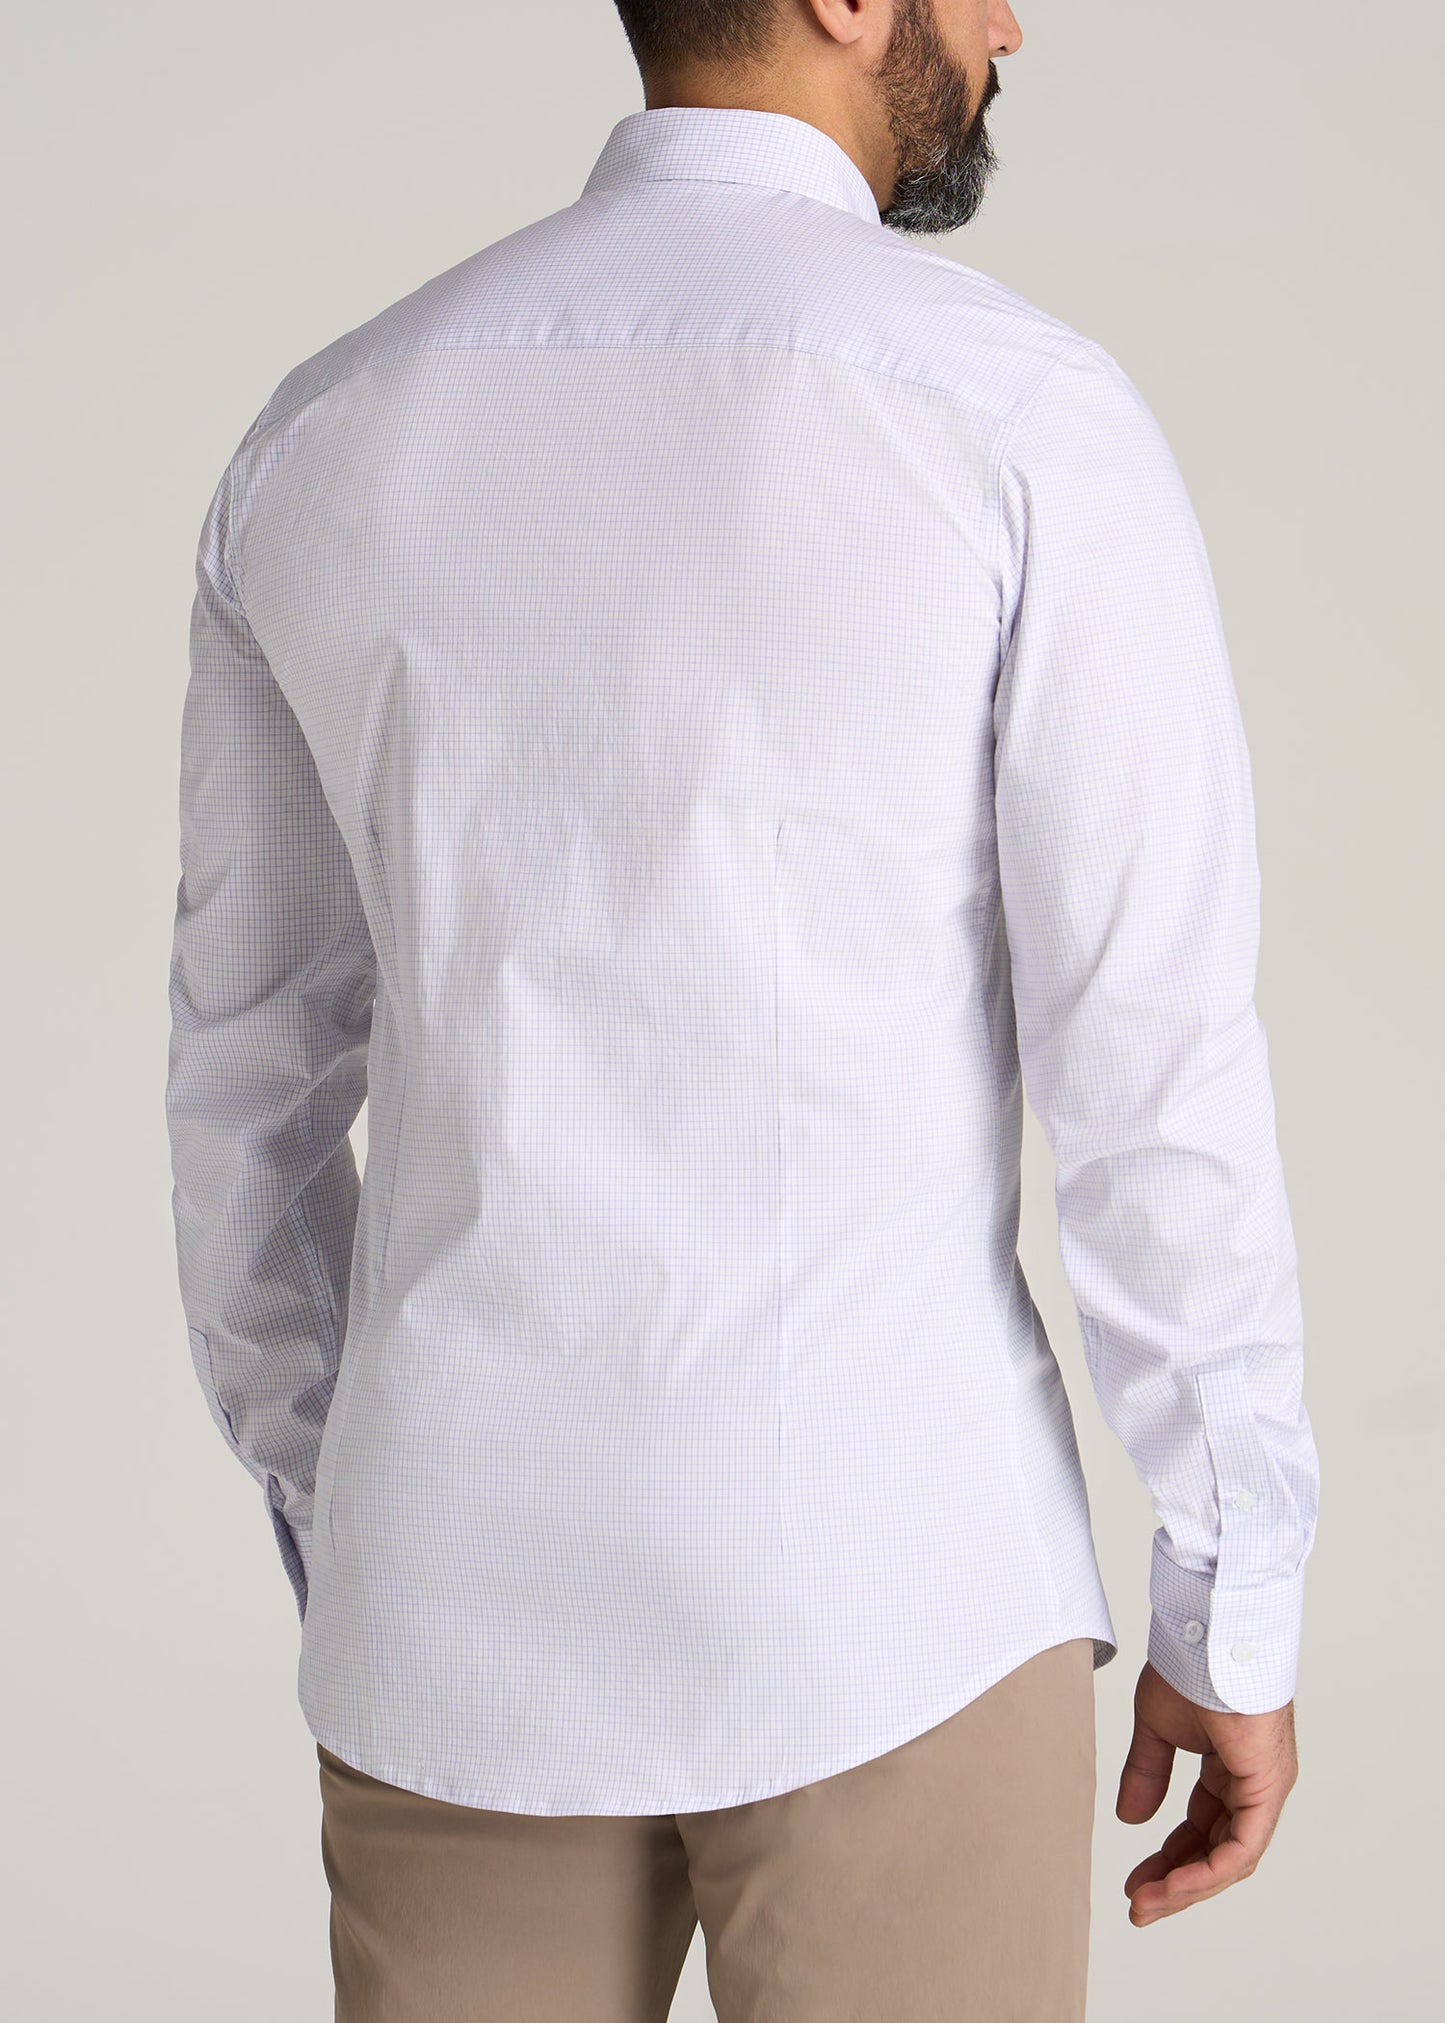 Oskar Button-Up Shirt for Tall Men